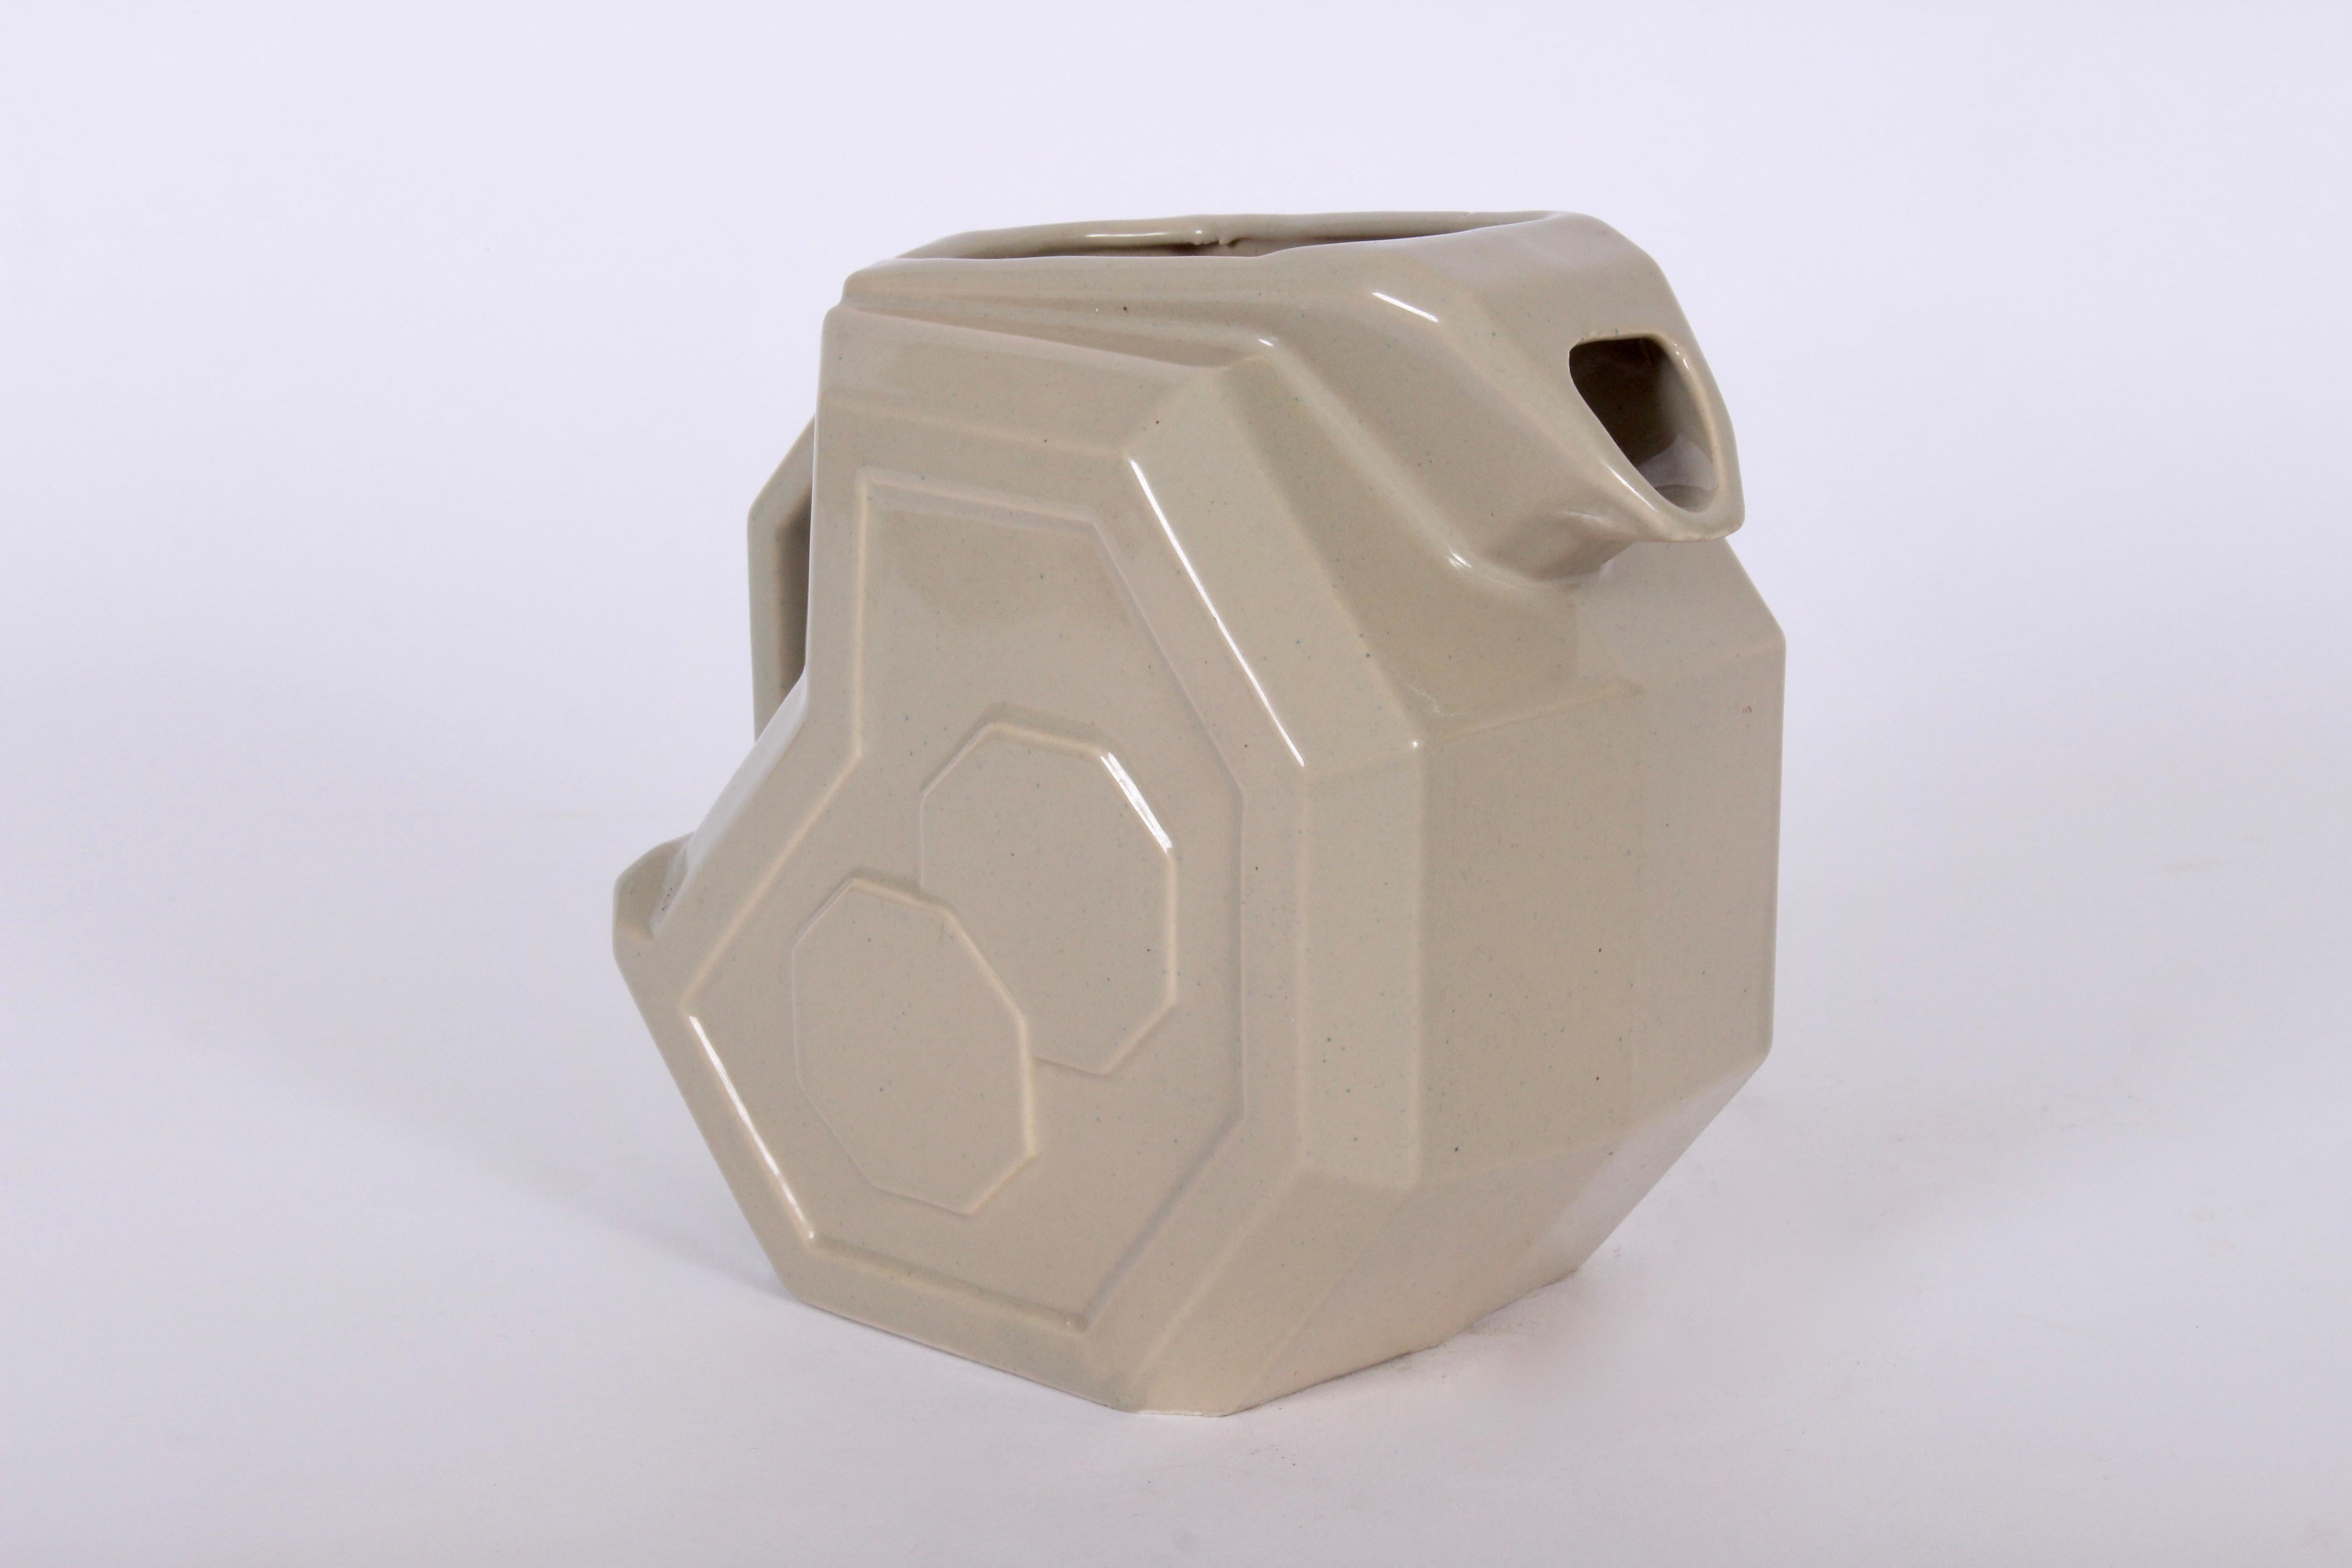 1940er Jahre Harold Holman, Alamo Potteries glasierte Keramik blass taupe achteckige Krug mit Eis Lippe. Geometrisch. Gestempeltes Modell 759. Hergestellt in San Antonio, Texas.